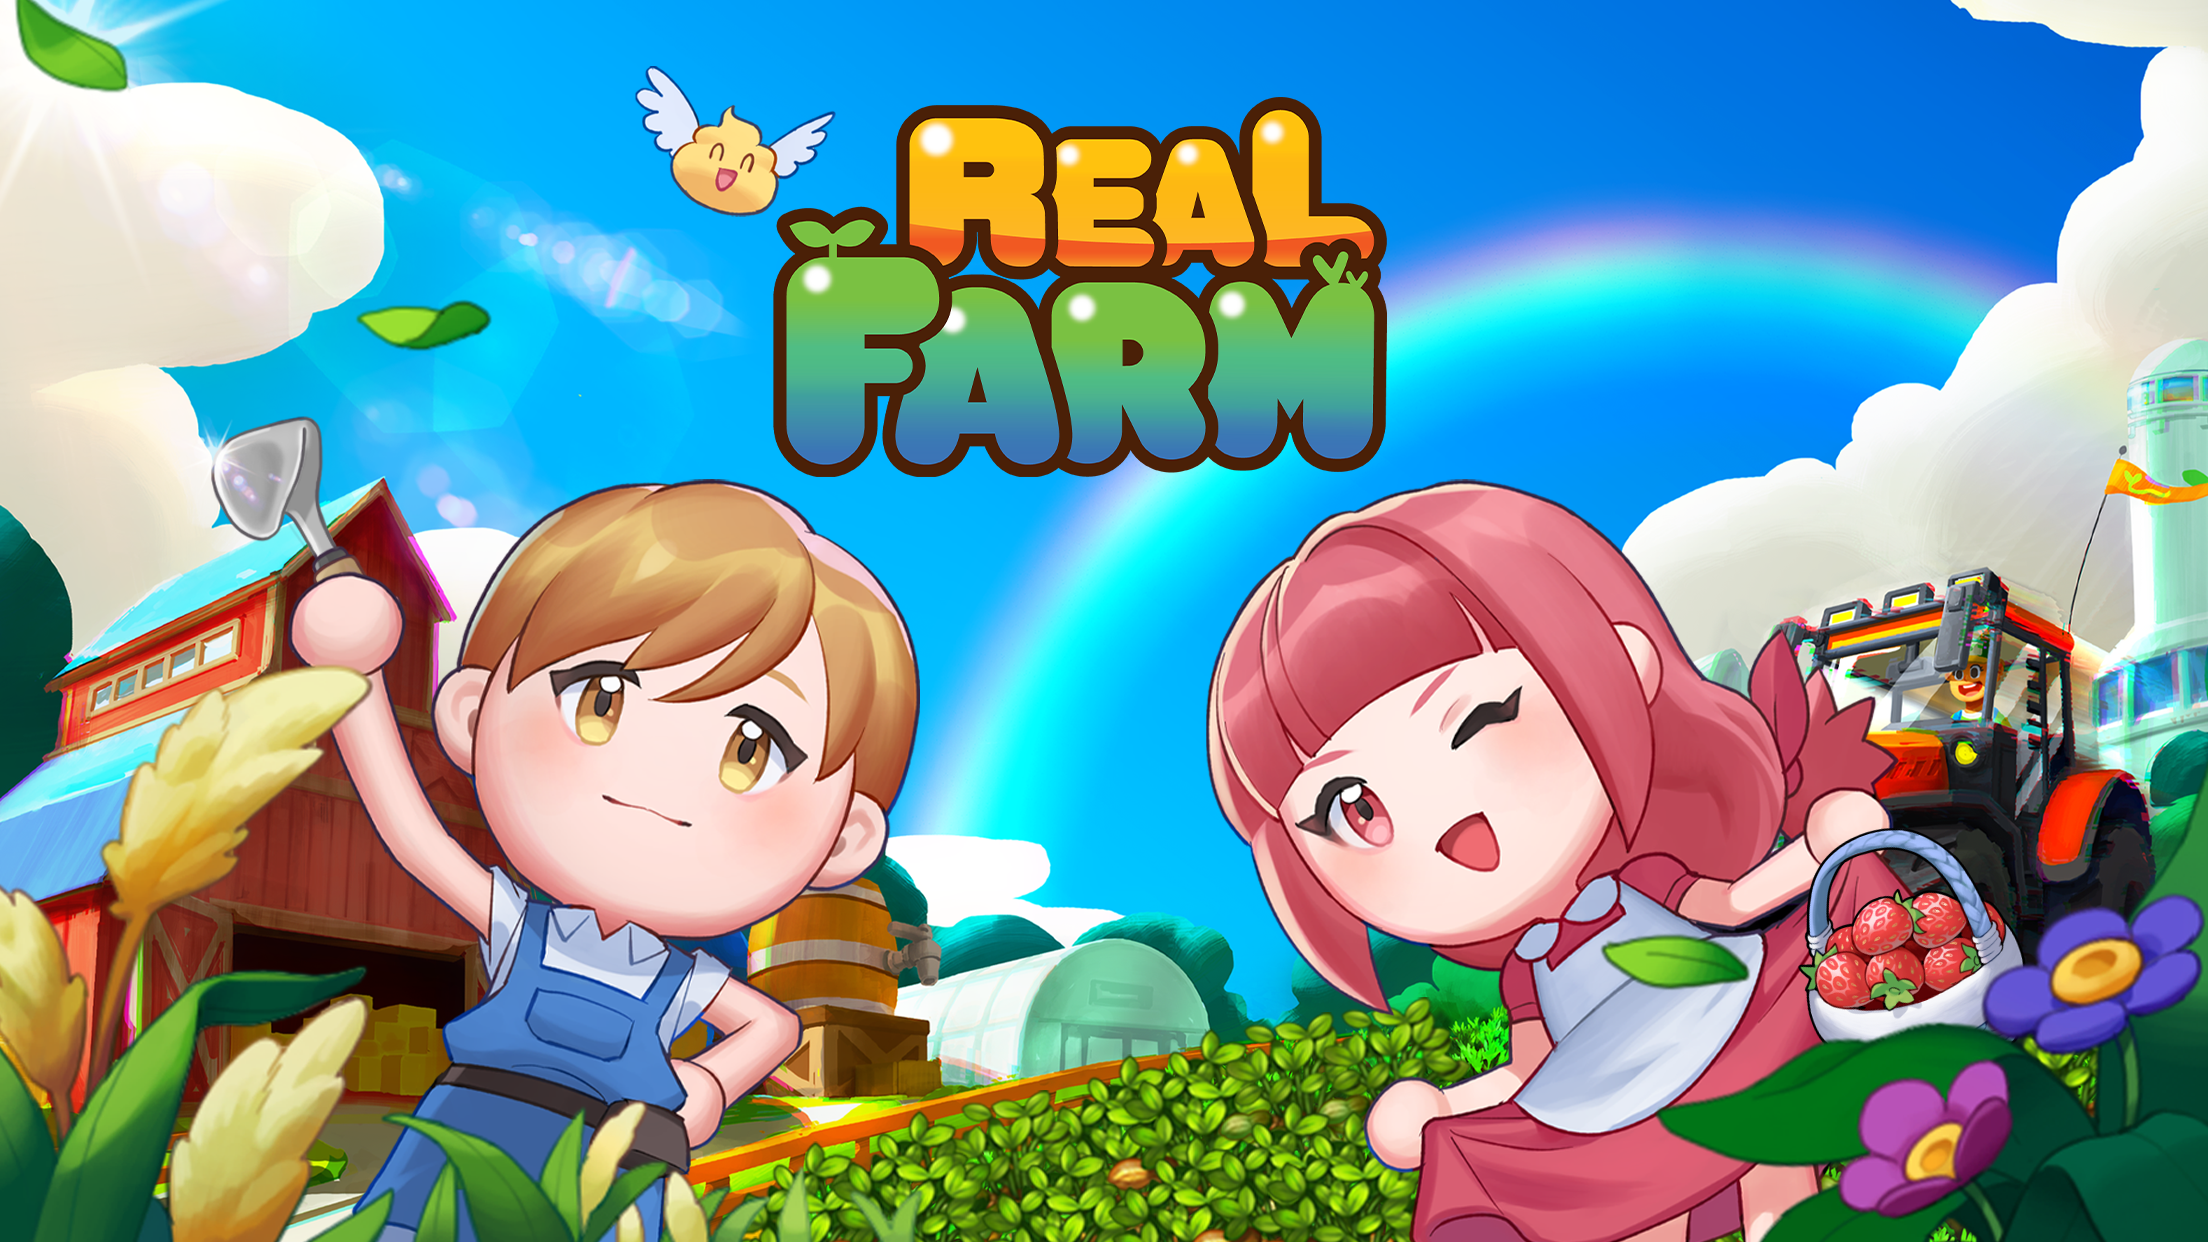 Screenshot 1 of Real Farm: Um jogo onde você conhece um fazendeiro real 